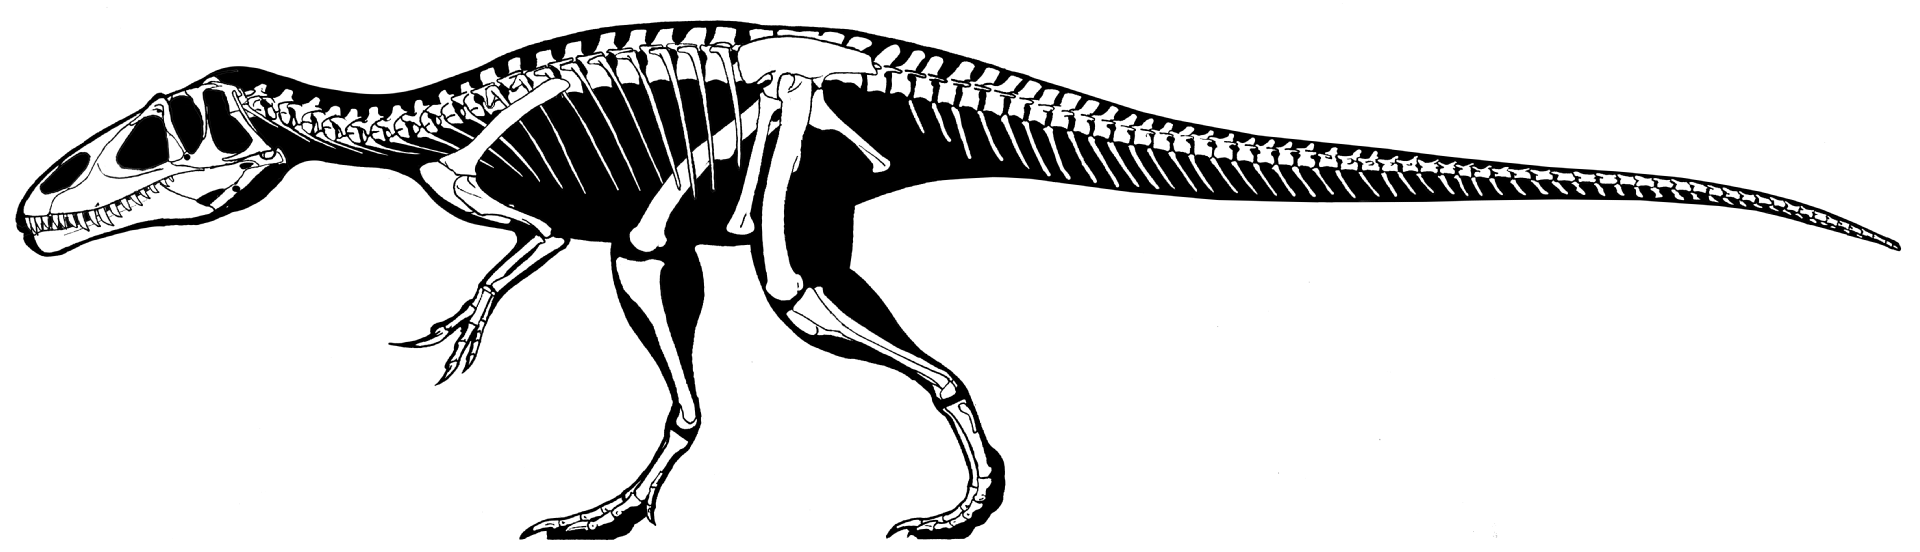 Moderní rekonstrukce kostry megalosauridního teropoda druhu Eustreptospondylus oxoniensis, žijícího na území západní Evropy v období střední až pozdní jury (asi před 163 až 154 miliony let). Tento středně velký teropod o délce kolem 6 metrů a půltuno